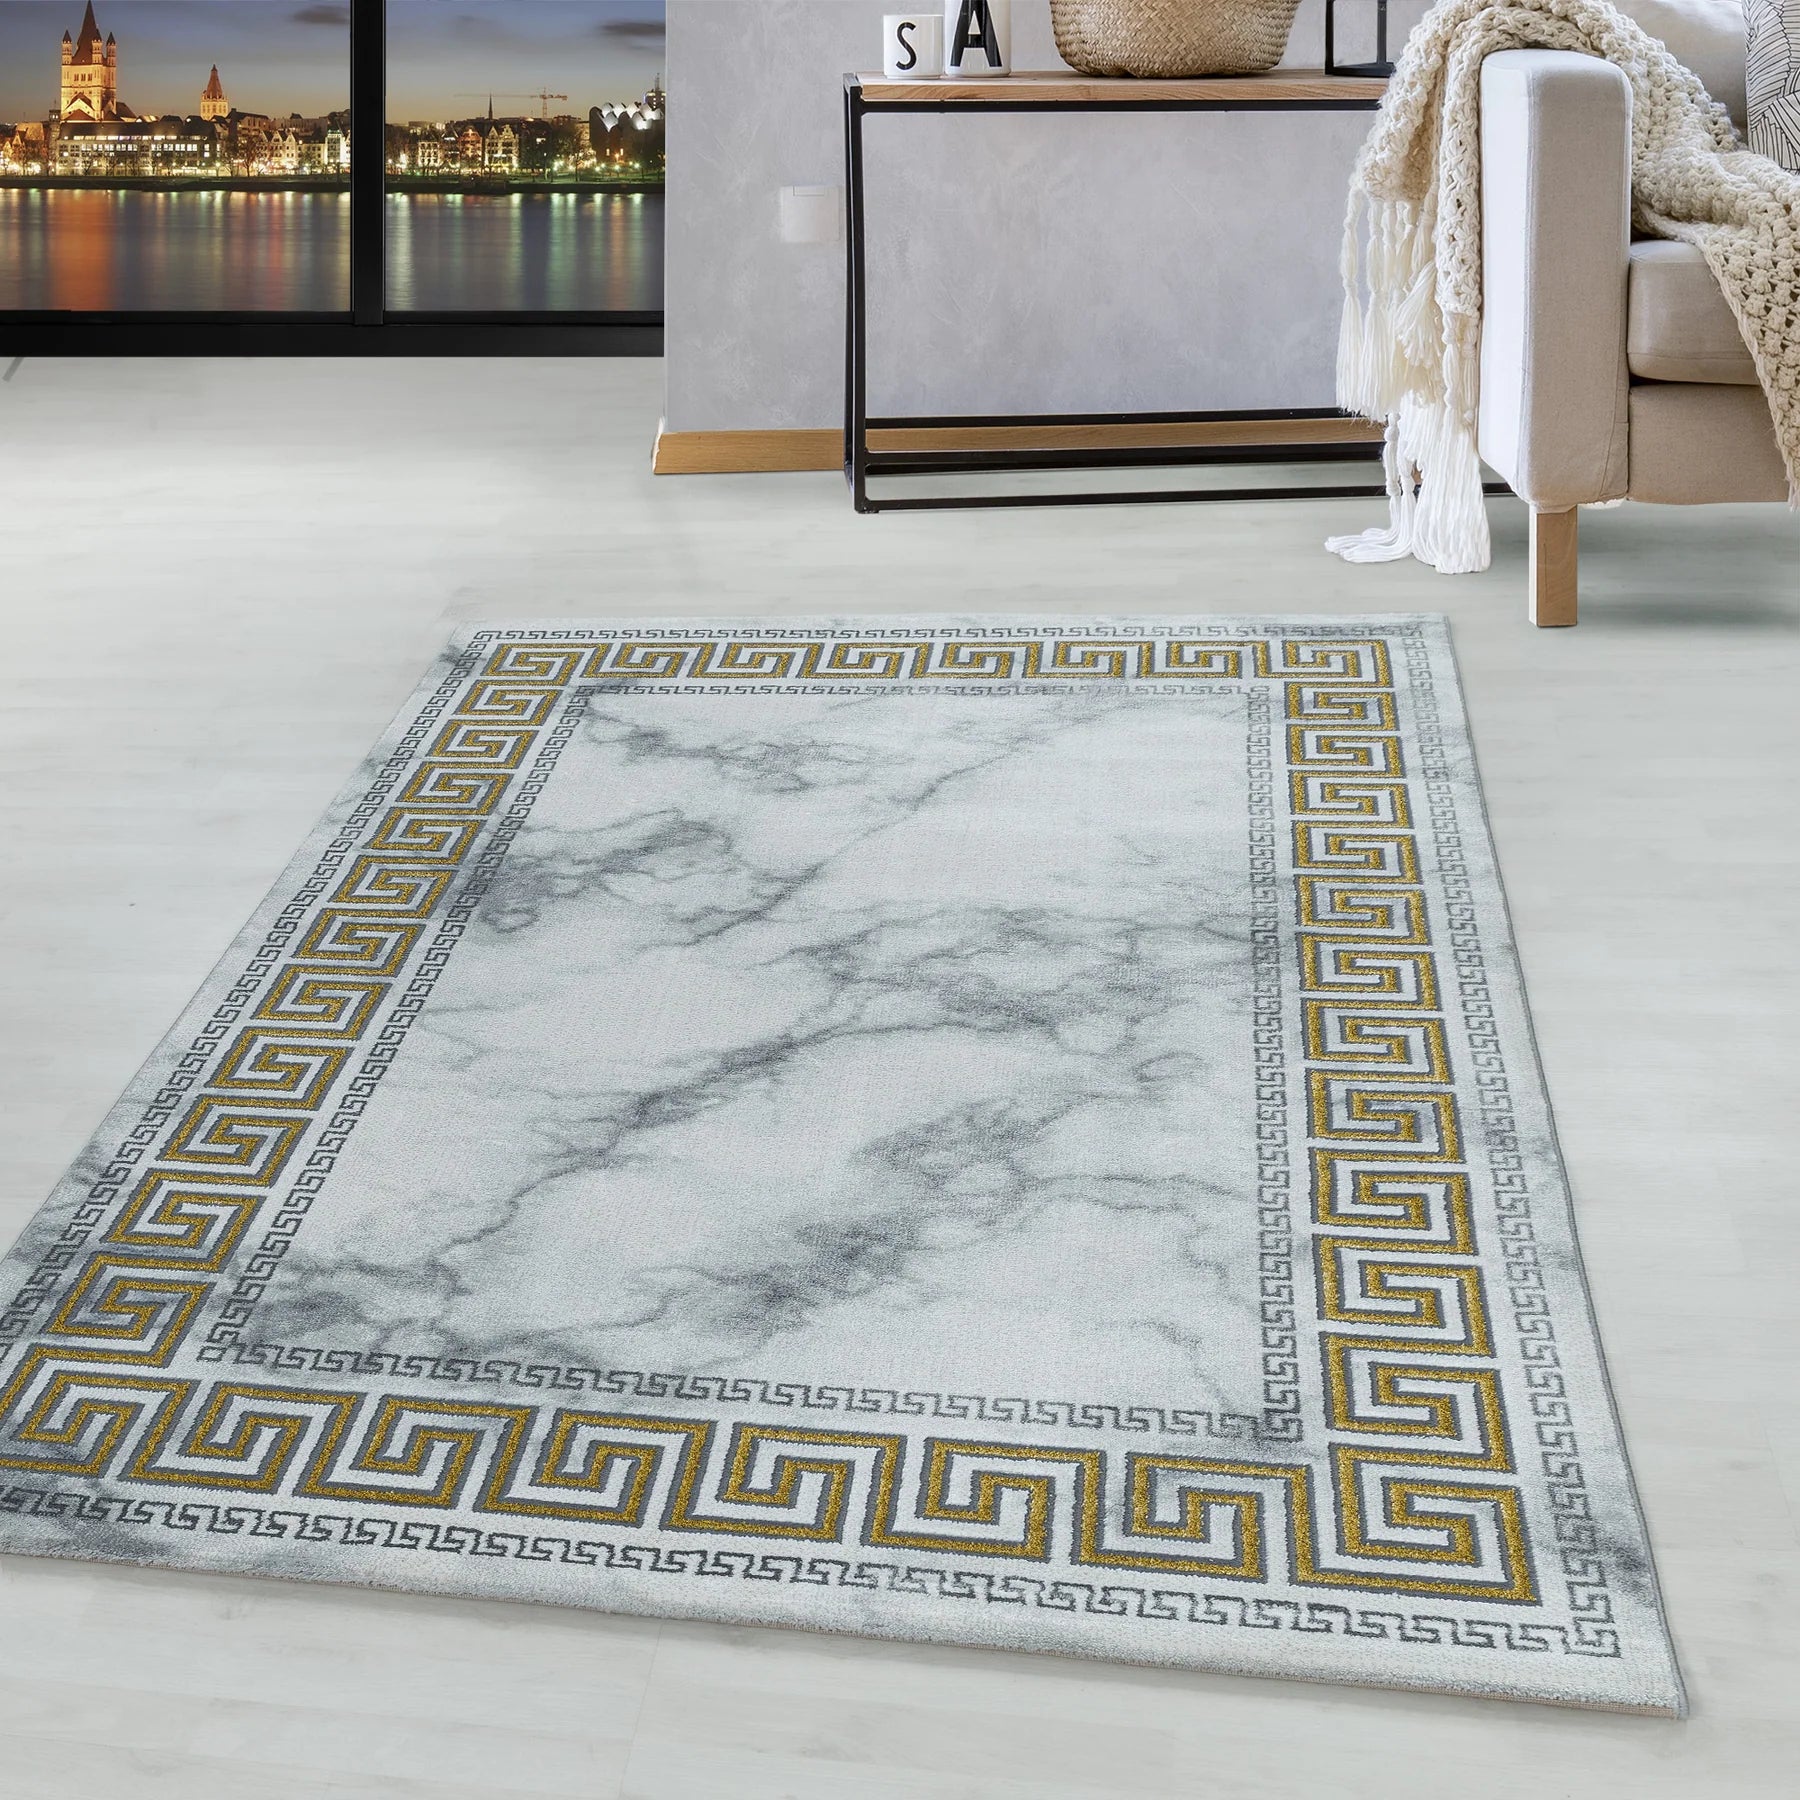 Moderner Teppich im Wohnzimmer - Zeitgenössische Eleganz für Ihr Zuhause